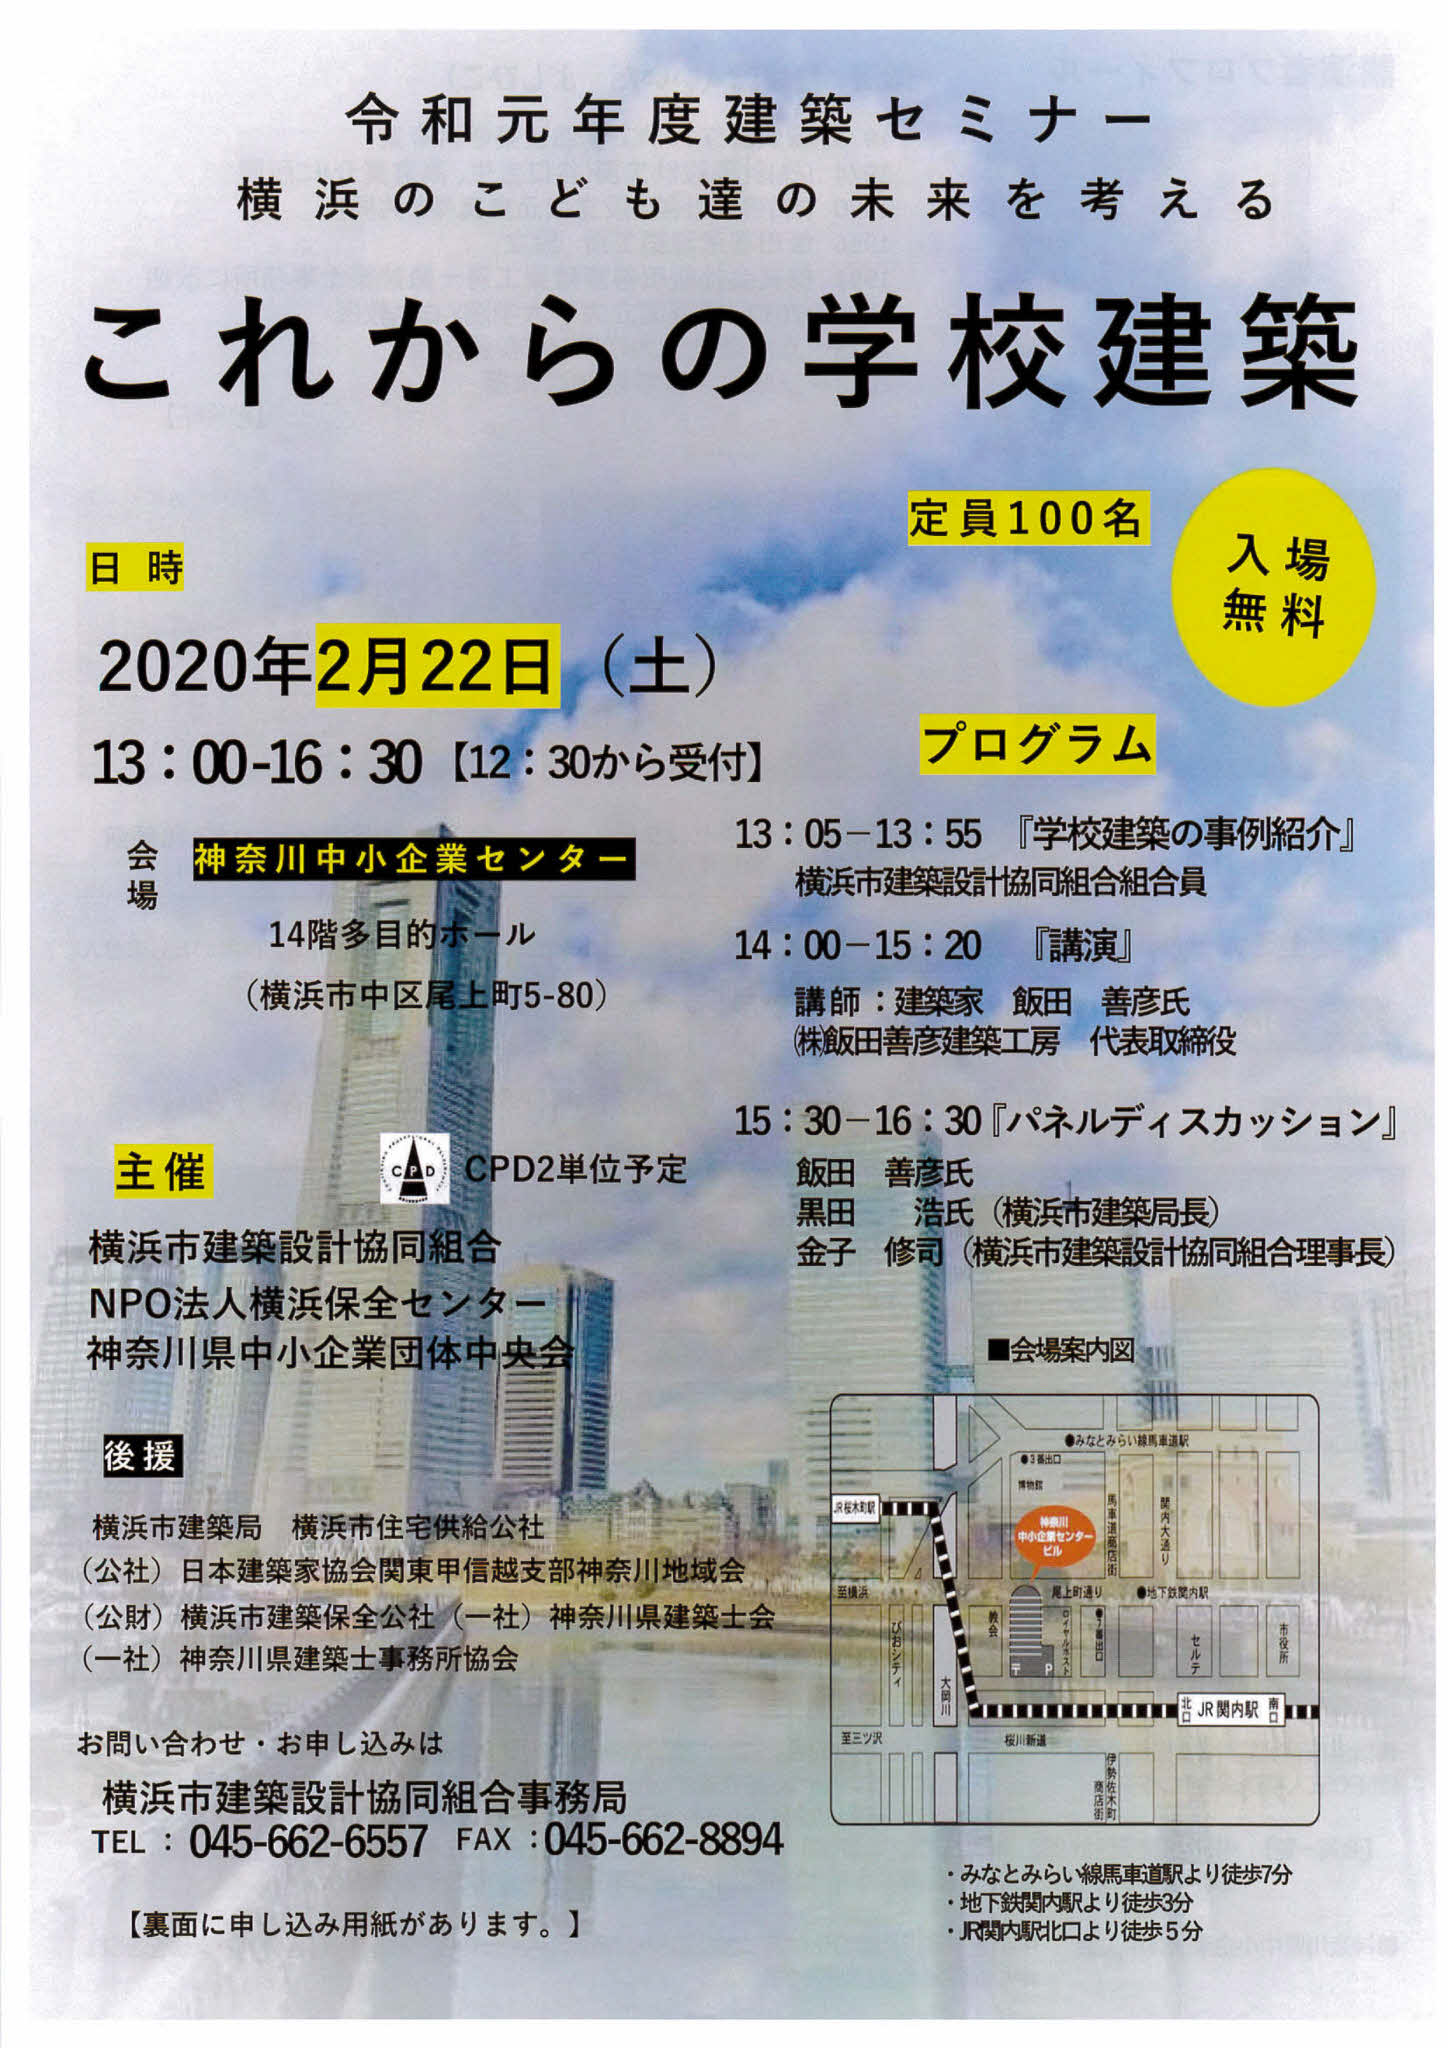 [開催延期のおしらせ] 令和元年度建築セミナー    (横浜のこども達の未来を考える)   －これからの学校建築－のお知らせ